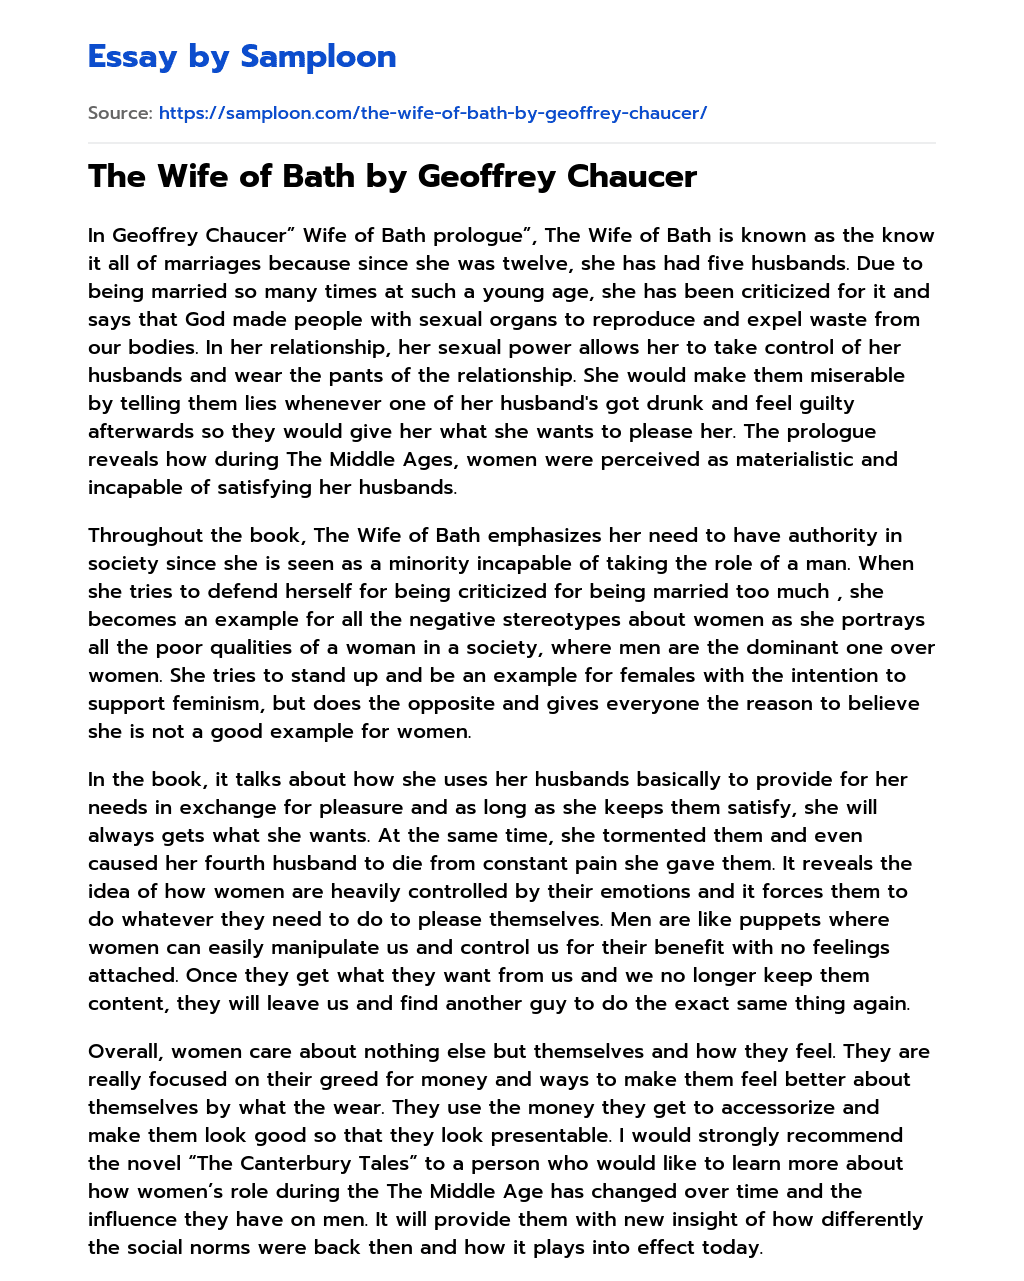 The Wife of Bath by Geoffrey Chaucer essay